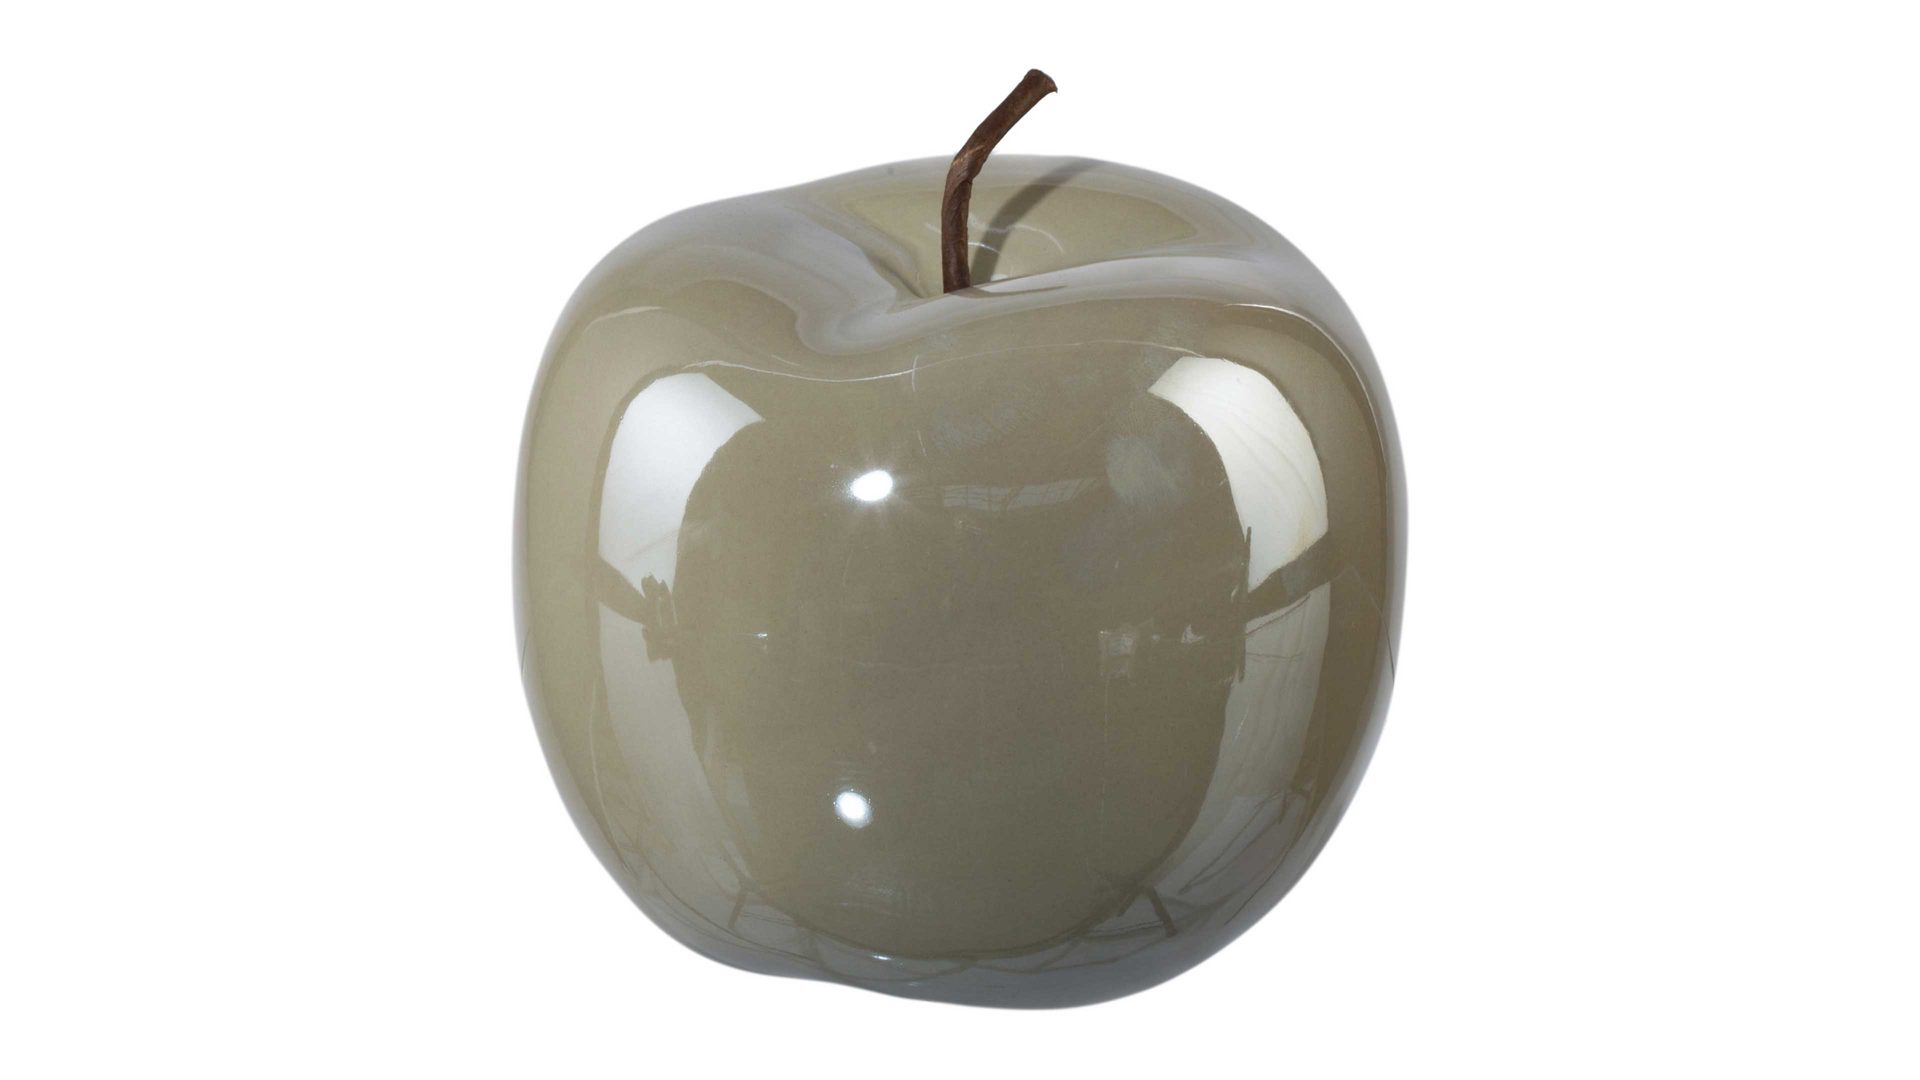 Figur Gasper aus Keramik in Dunkelgrau Keramik-Apfel Glorian dunkelgraue Keramik – Durchmesser ca. 15 cm